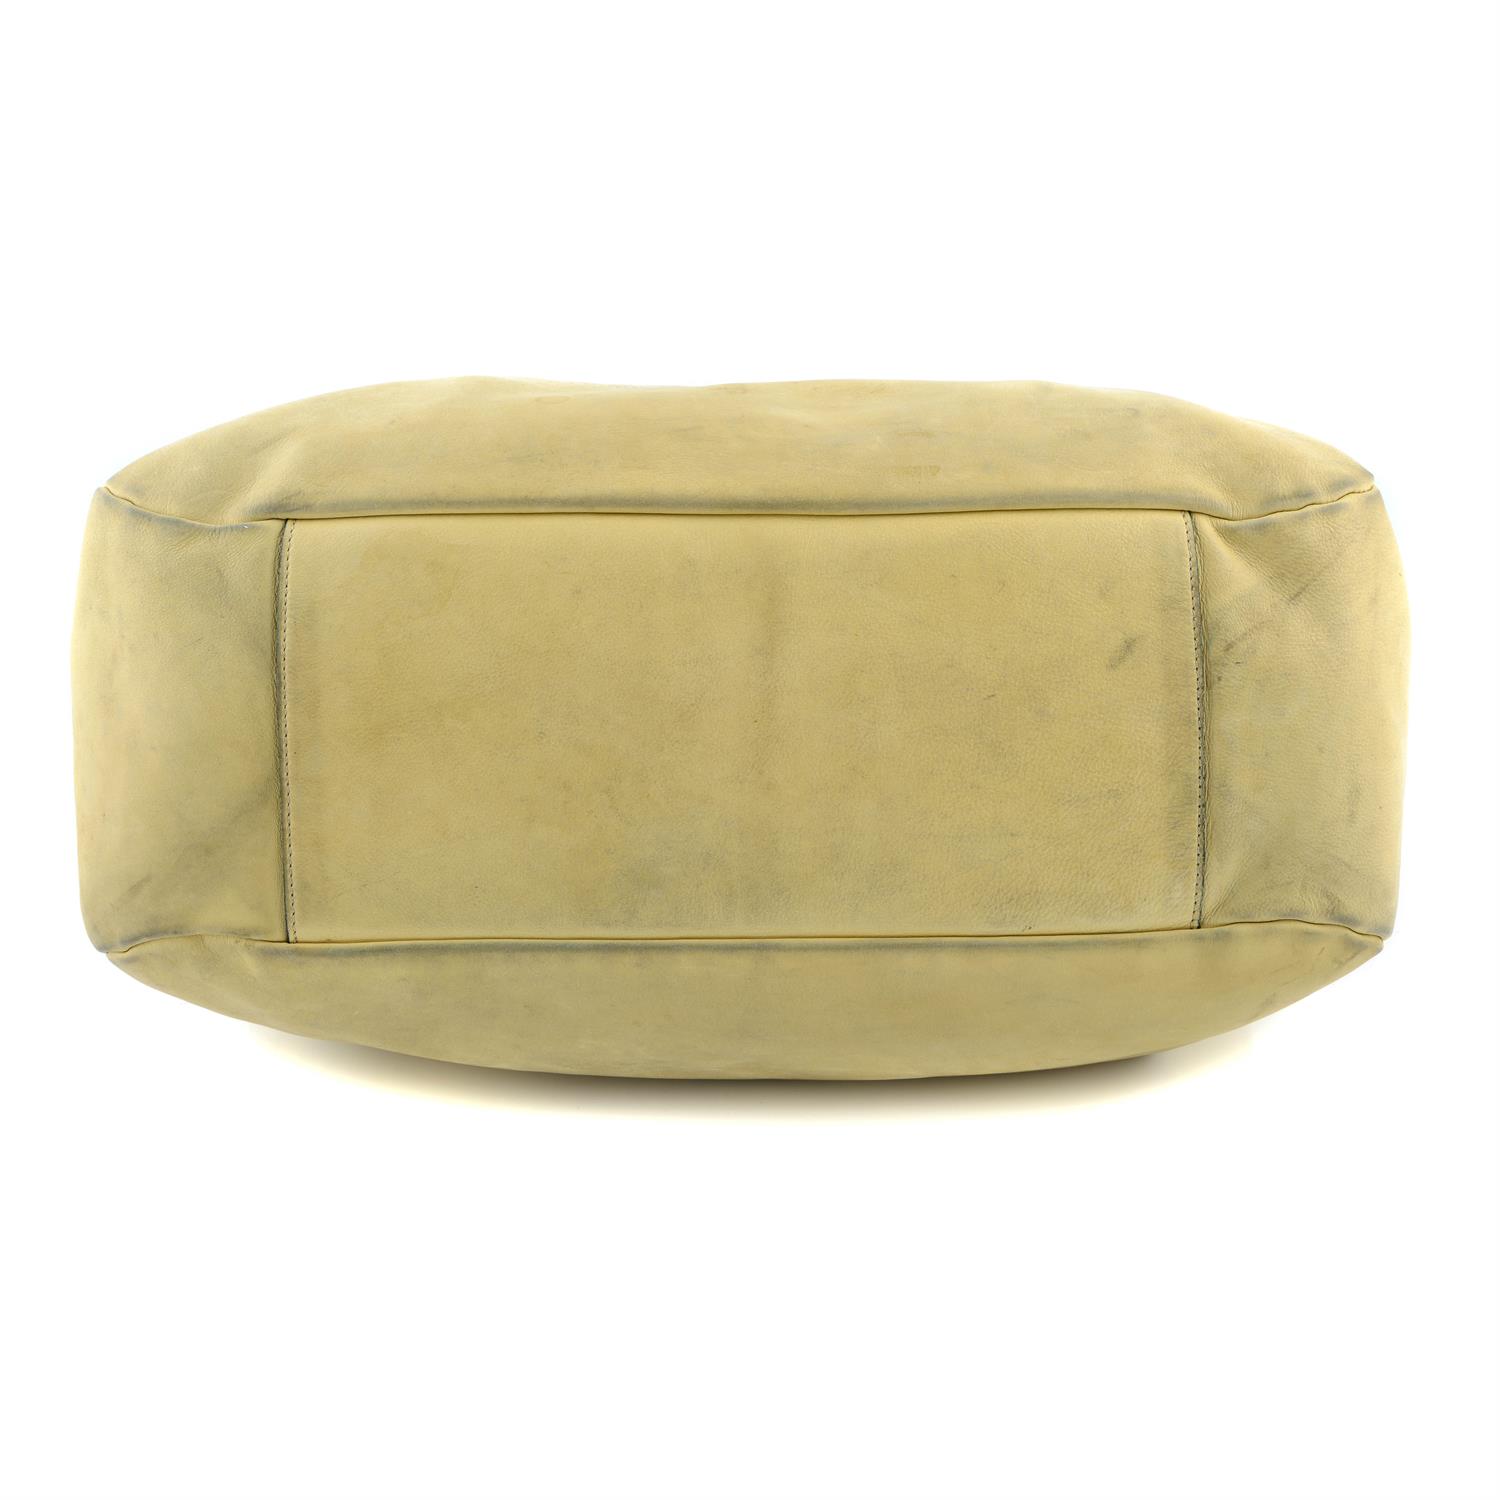 CHANEL - a beige hobo handbag. - Image 5 of 6